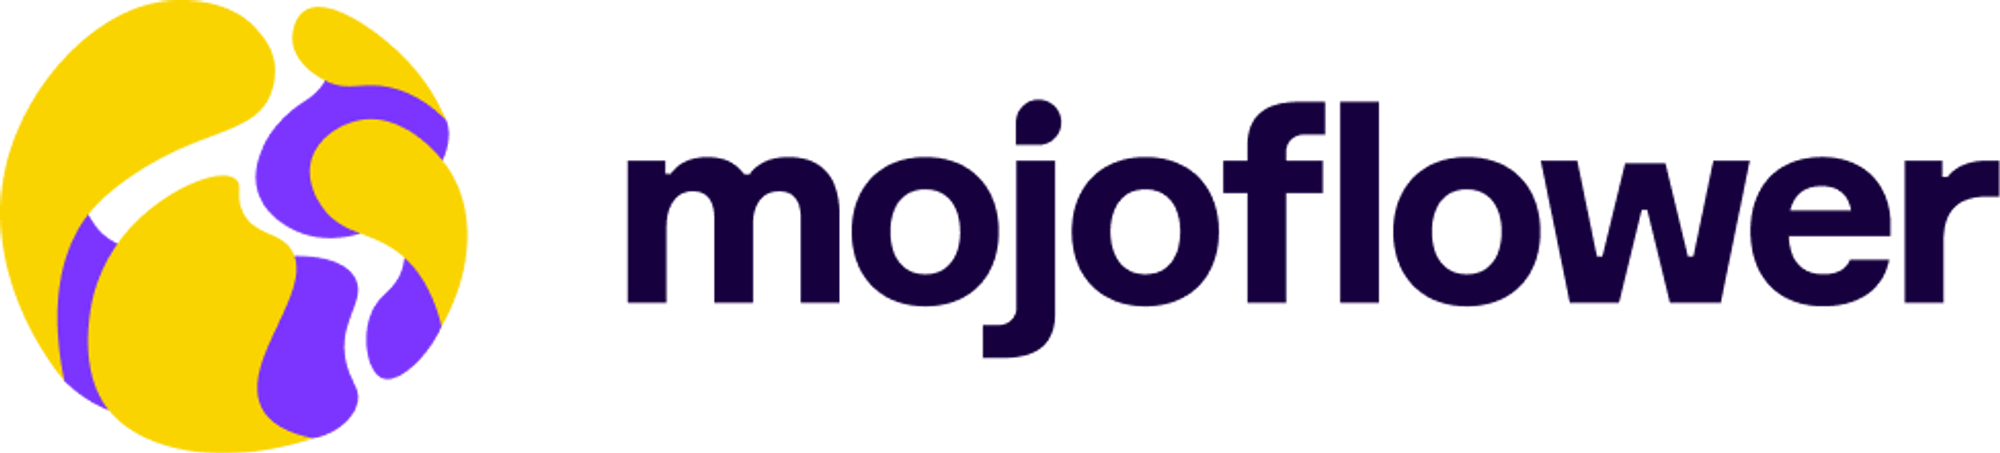 Mojoflower.io logo